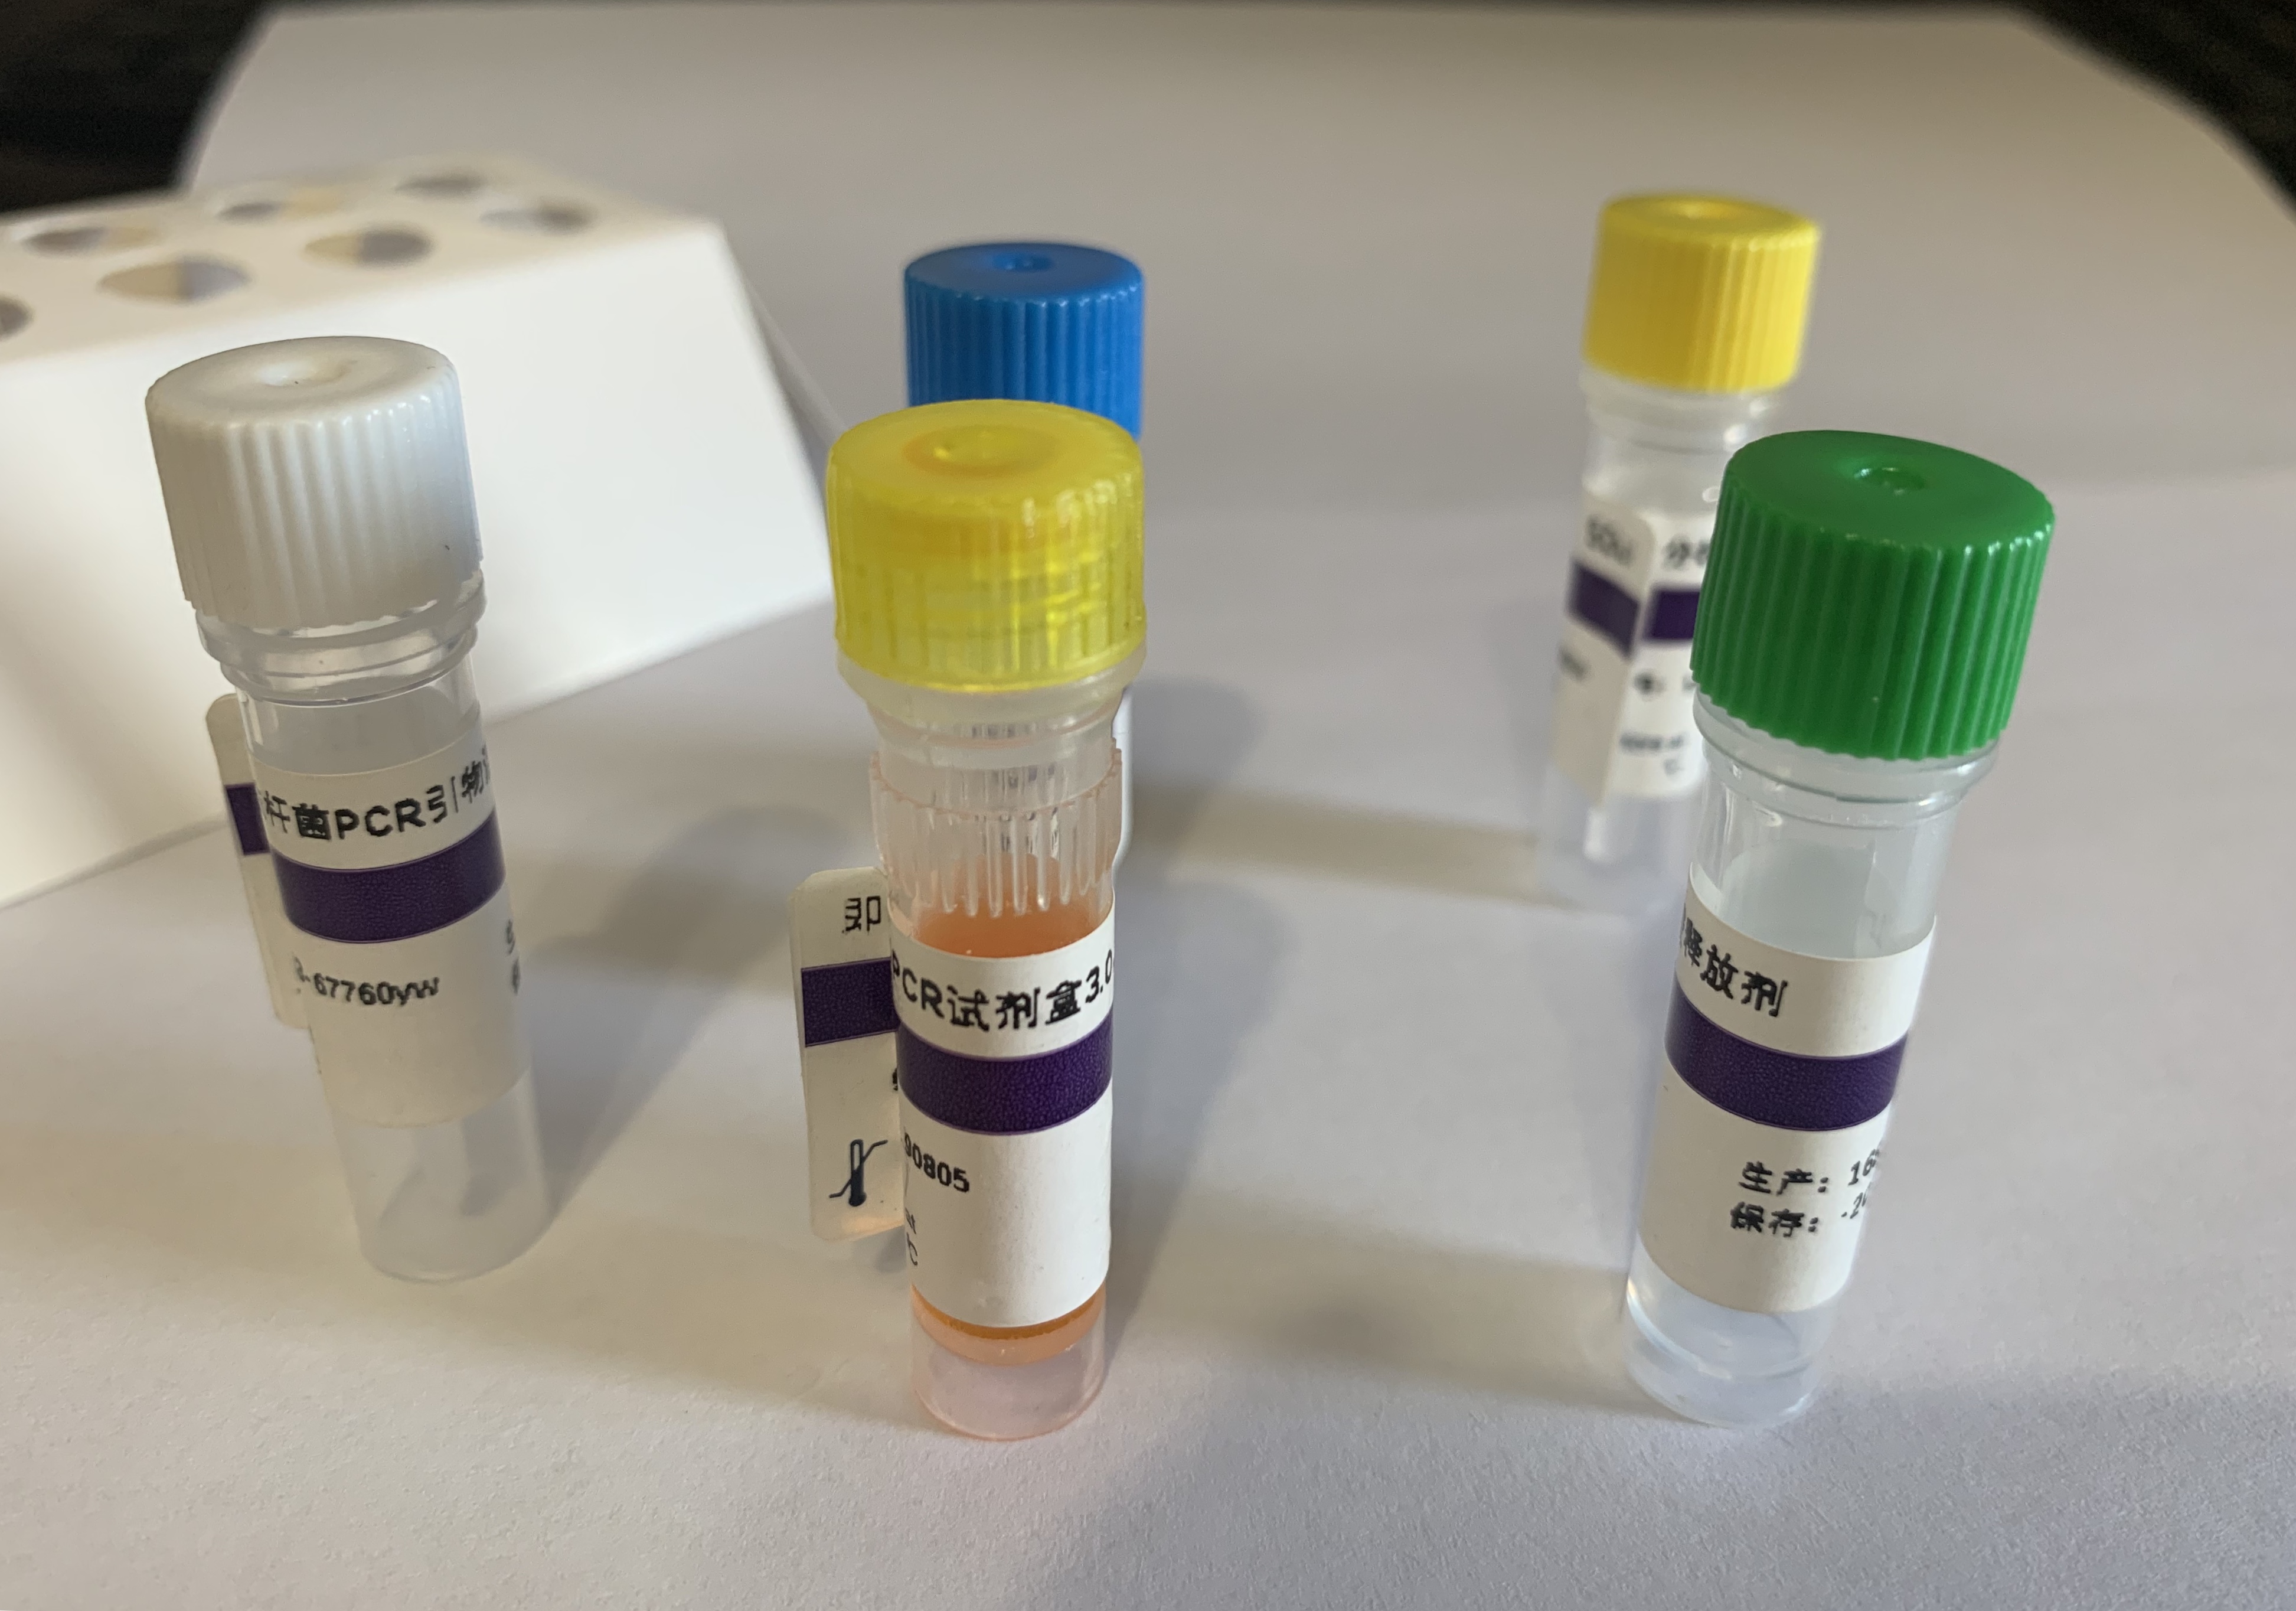 犬附红细胞体（犬嗜血支原体）PCR试剂盒